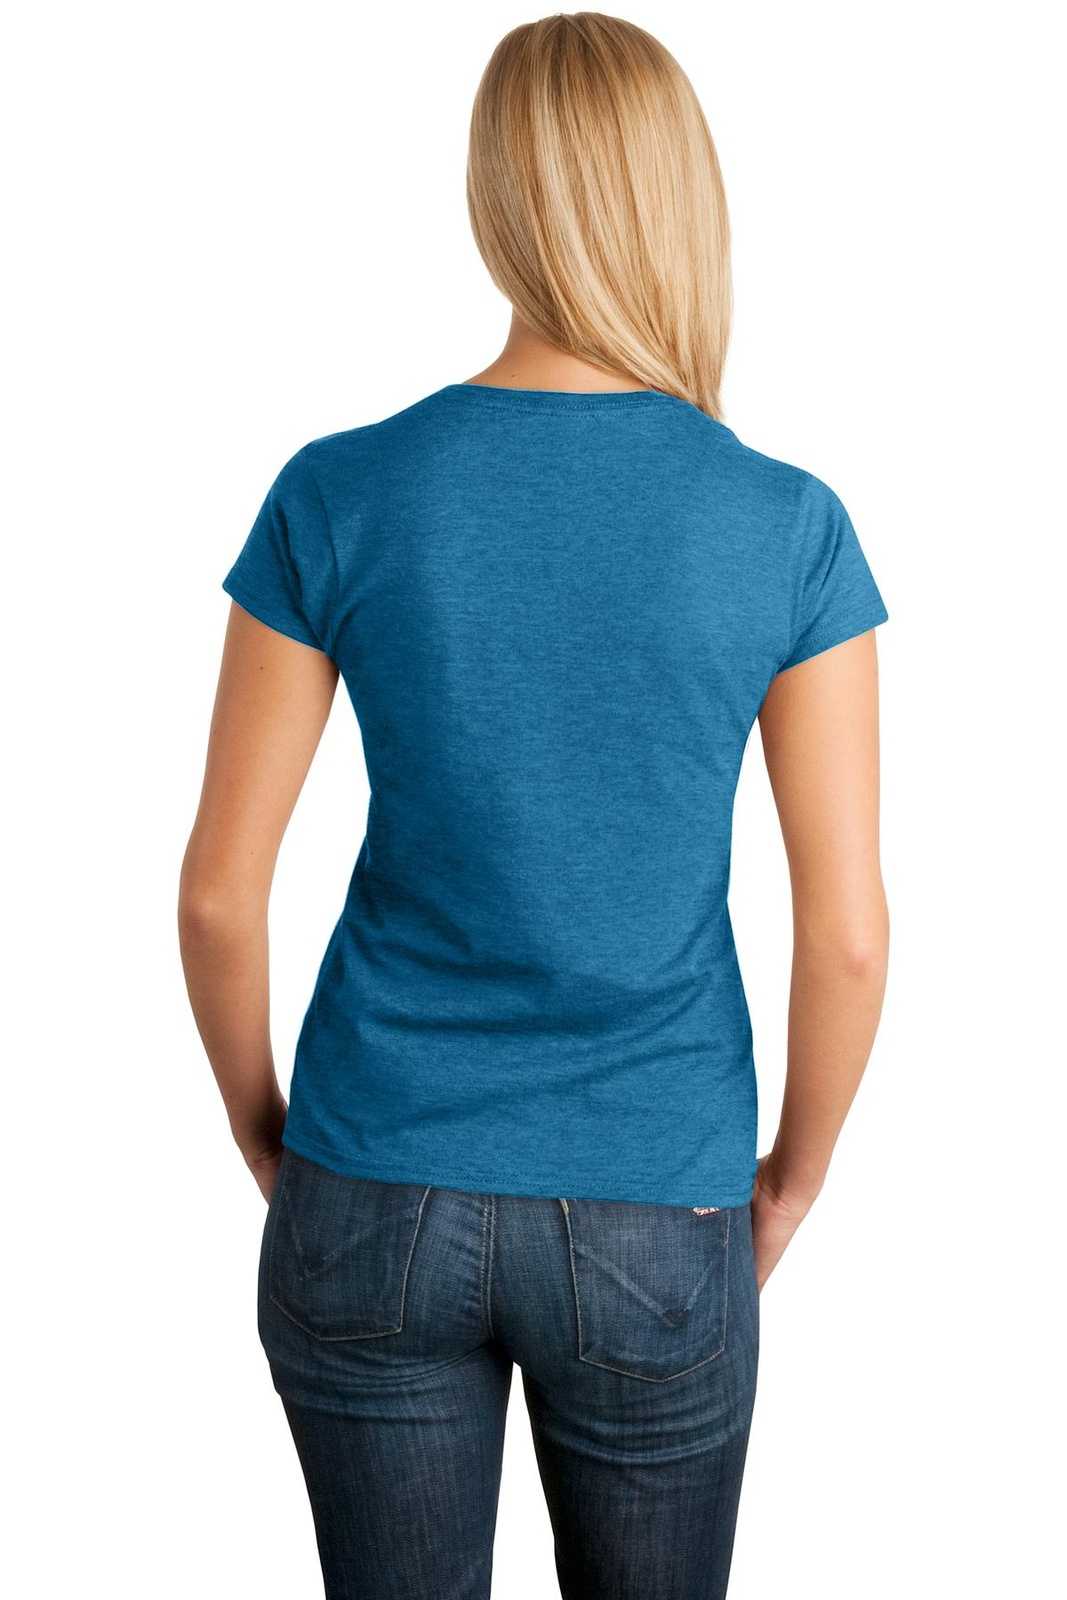 Gildan 64000L Softstyle Ladies T-Shirt - Antique Sapphire - HIT a Double